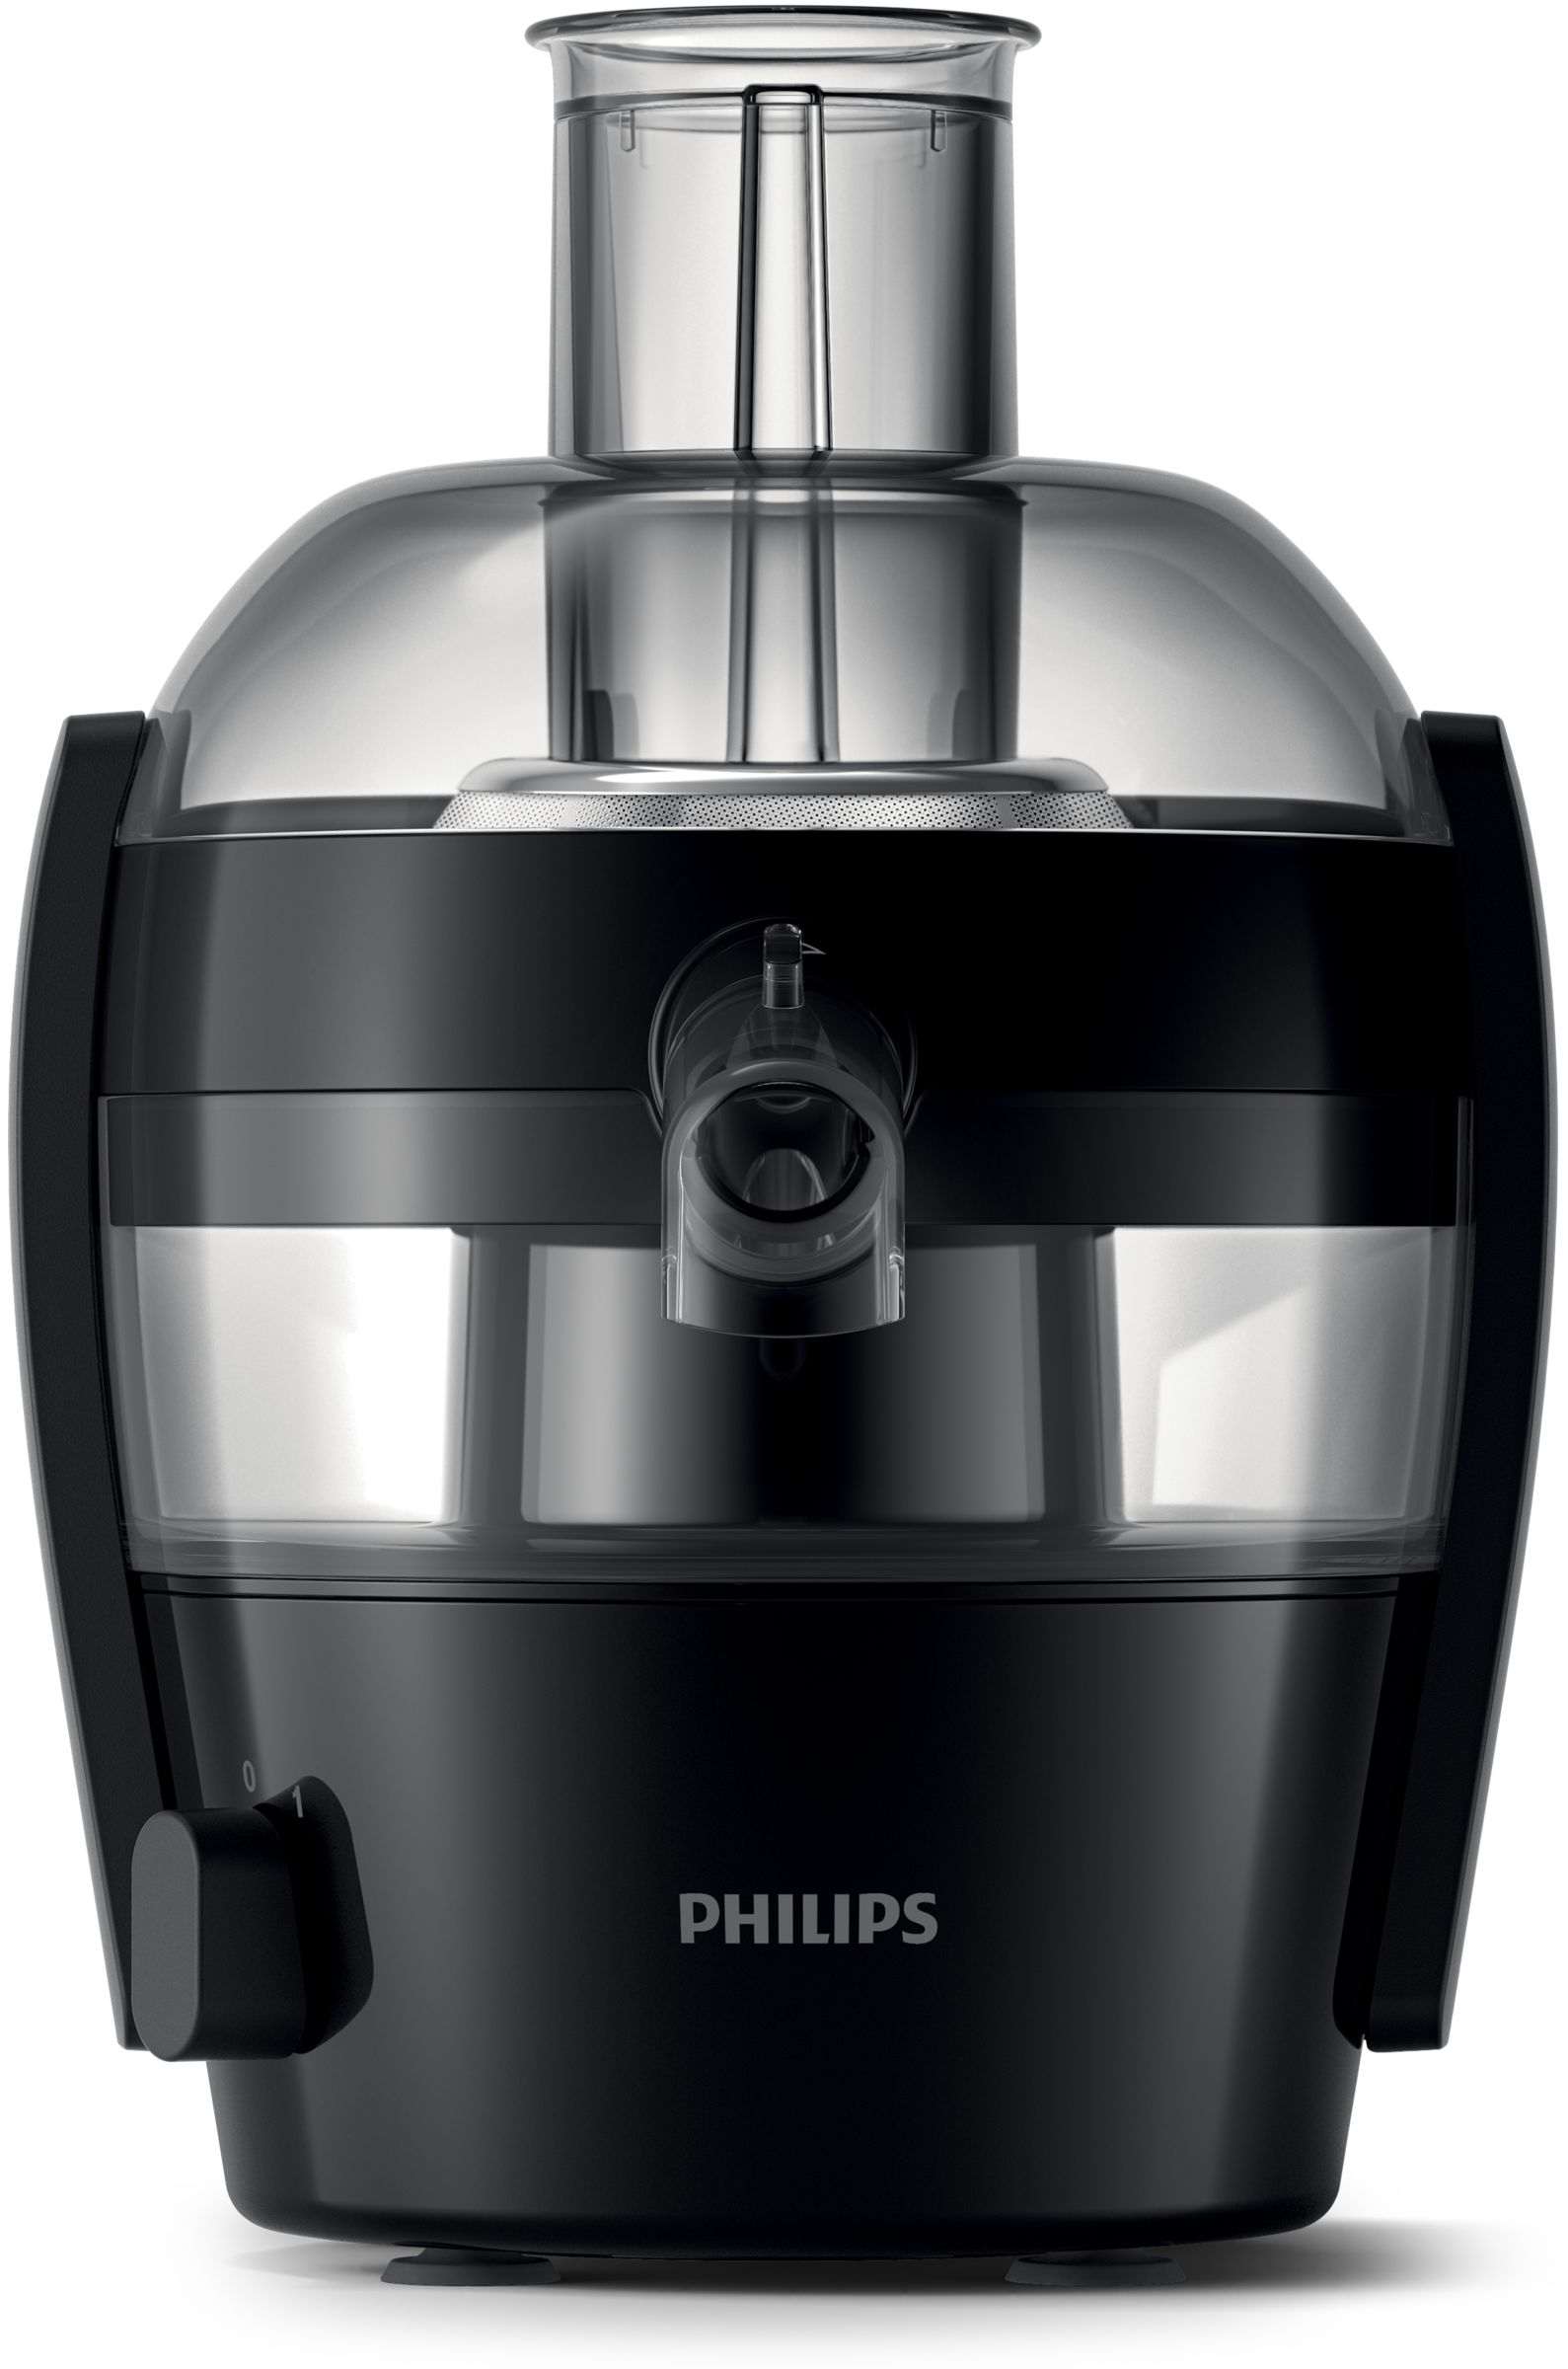 Philips CENTRIFUGA 400W 1,5L.QUICK CLEAN HR1832/00